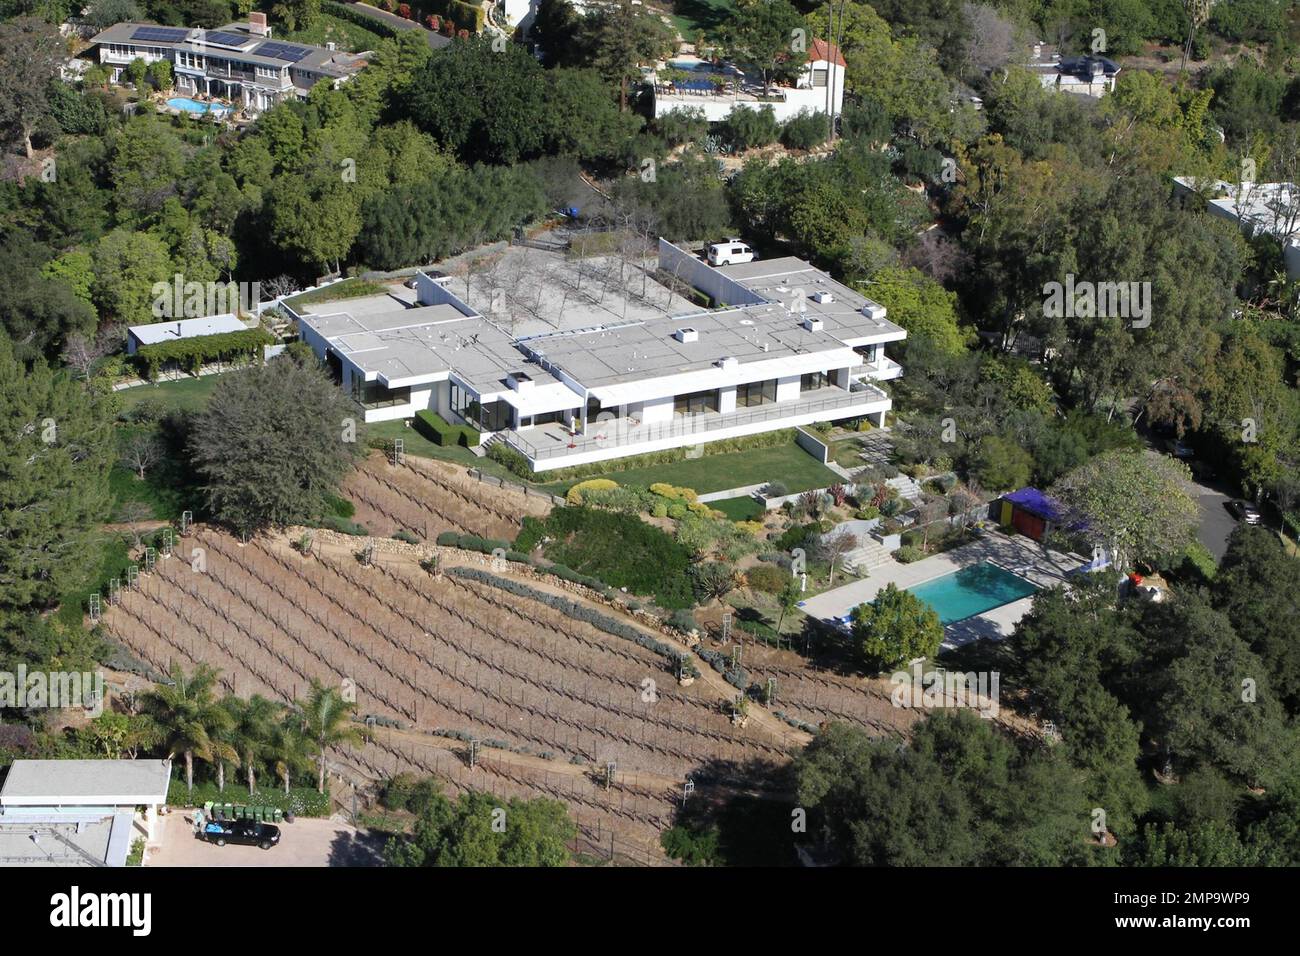 EXCLUSIF !! L'actrice Jennifer Aniston aurait acheté ce magnifique nid  d'amour de $22 millions à Bel Air. La propriété de 8 500 pieds carrés est  perchée sur un terrain estimé de 3,25